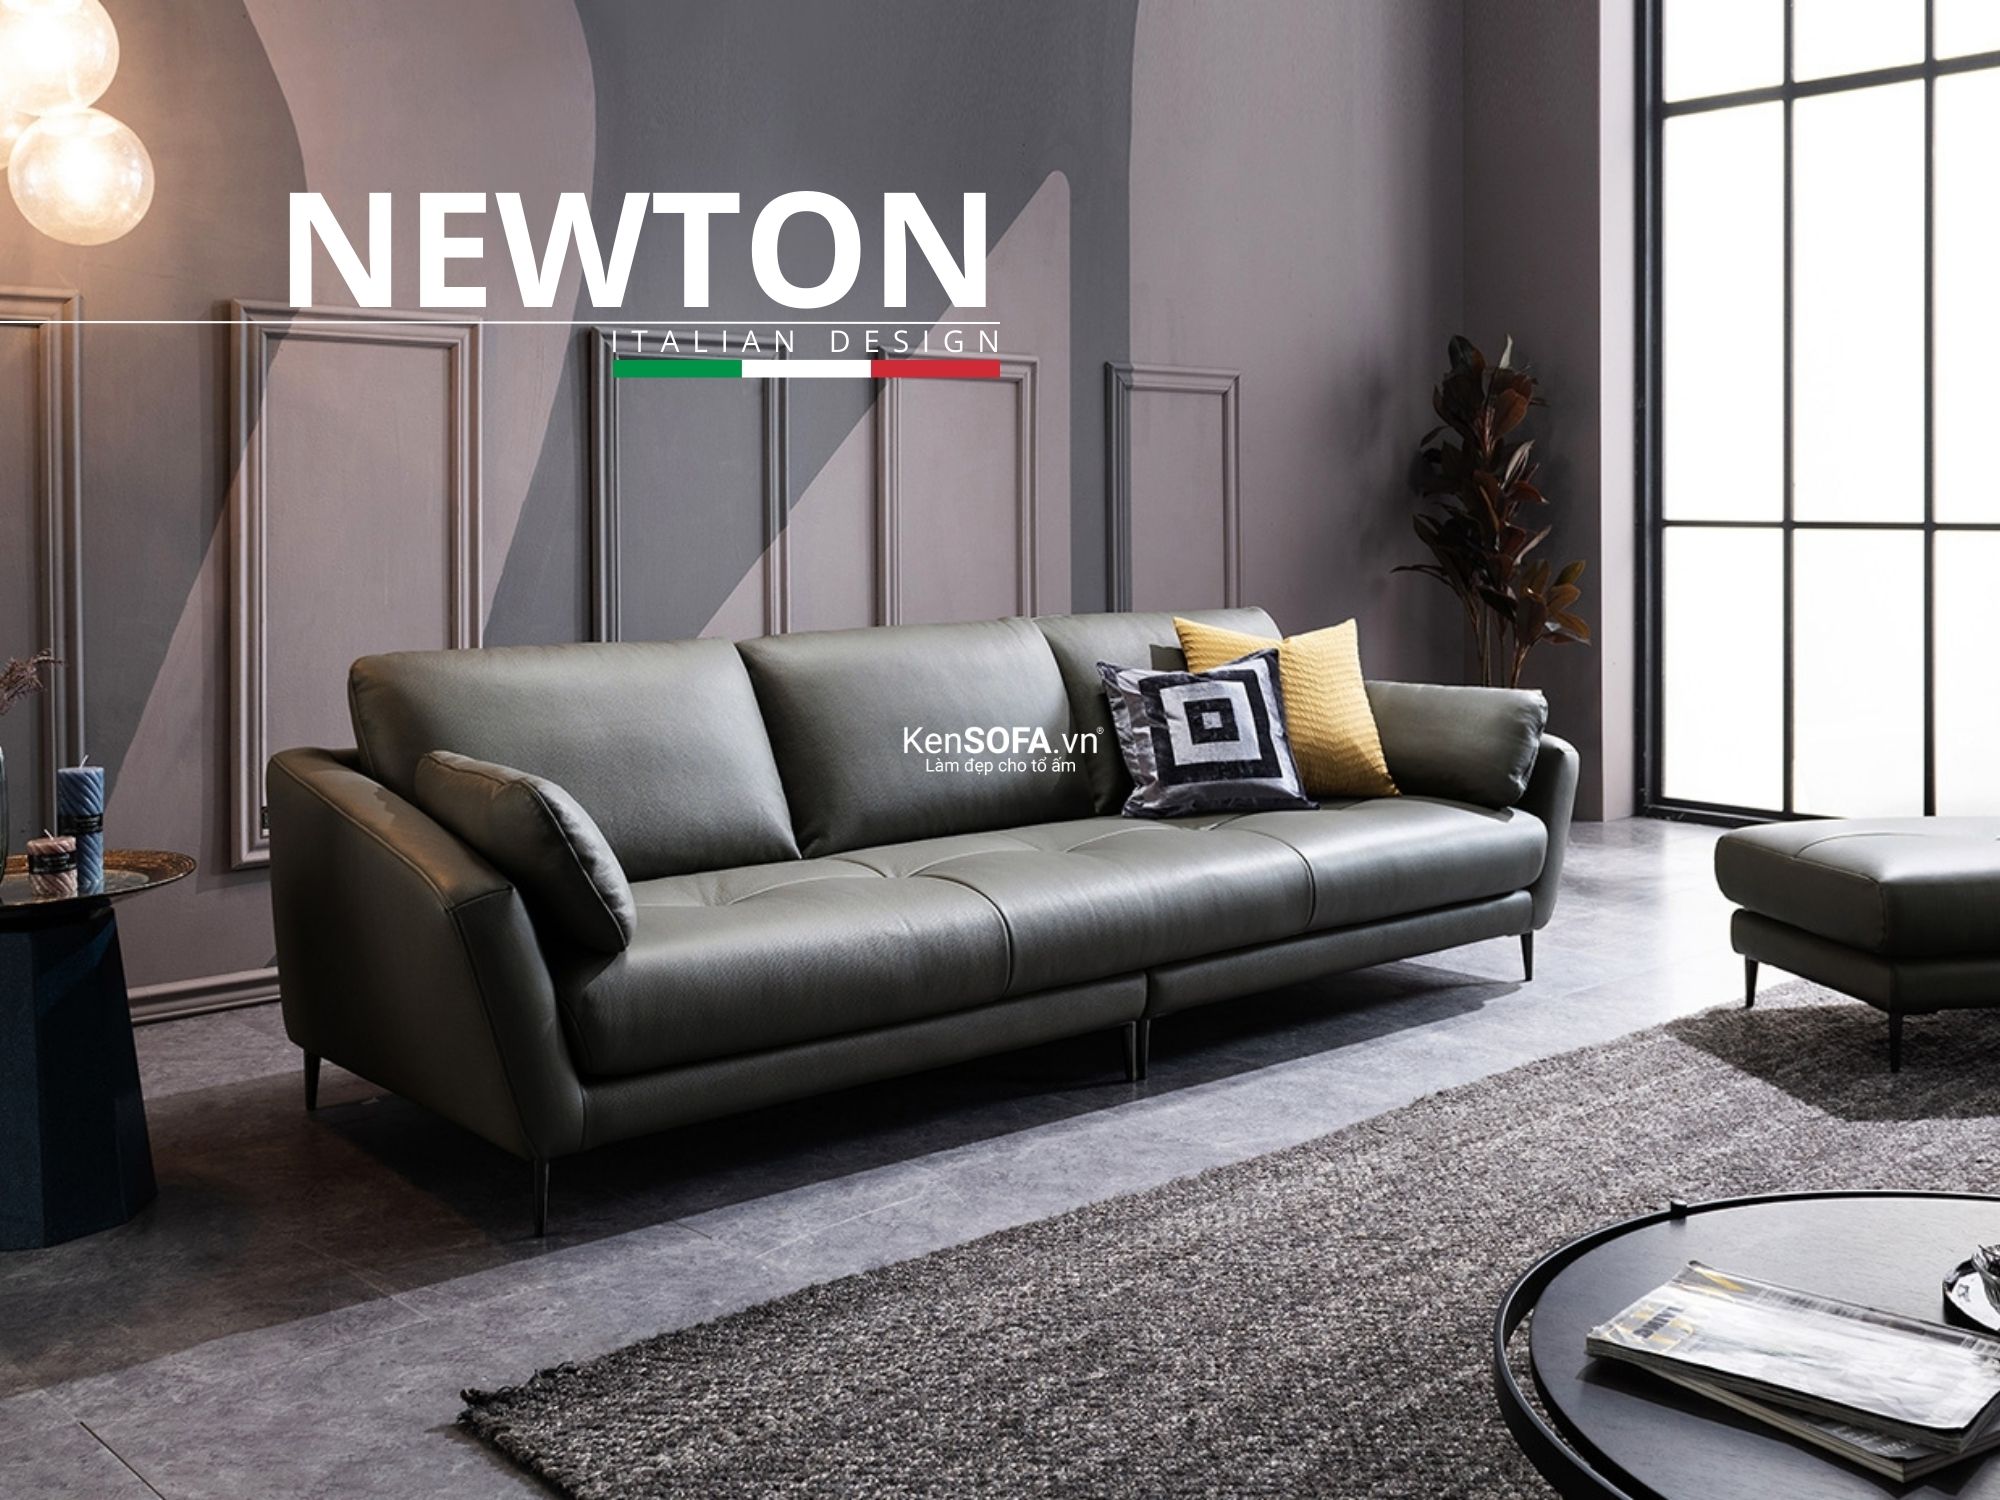 Sofa băng da cao cấp CC69 Newton da Hàn Quốc nhập khẩu